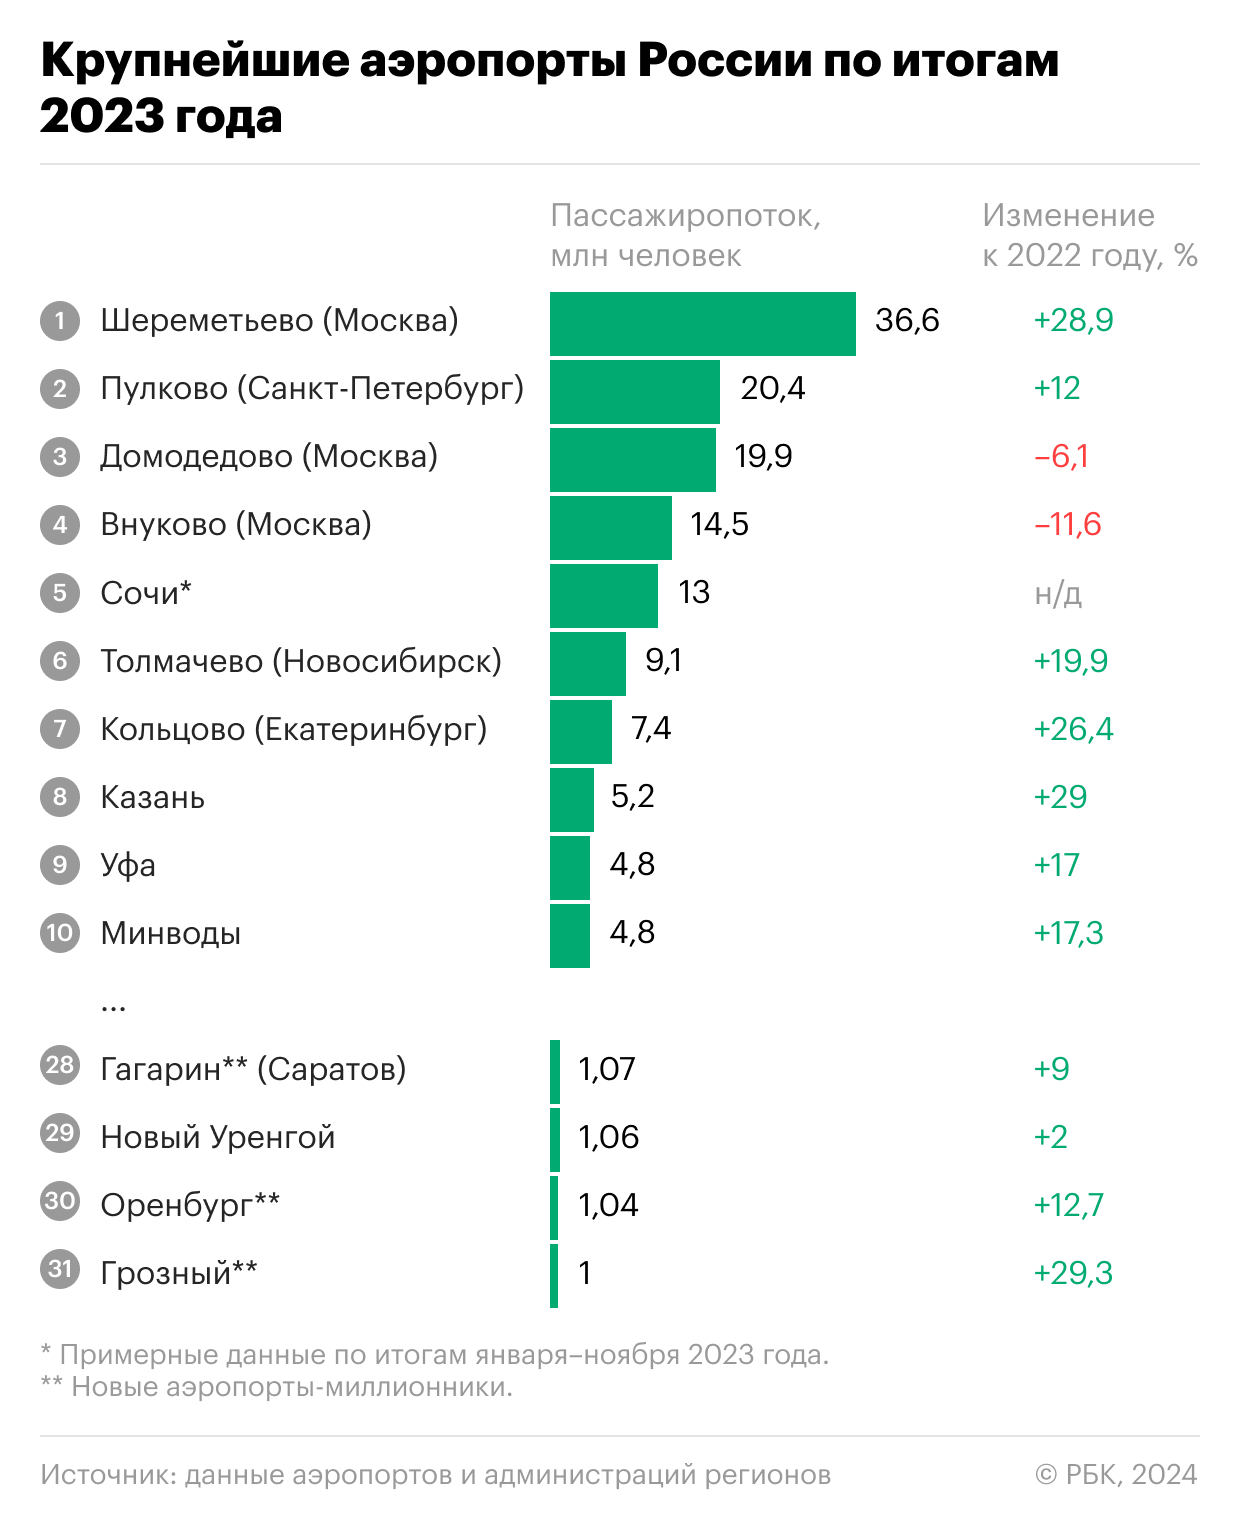 Гагарин стал миллионником: топ аэропортов России по пассажиропотоку